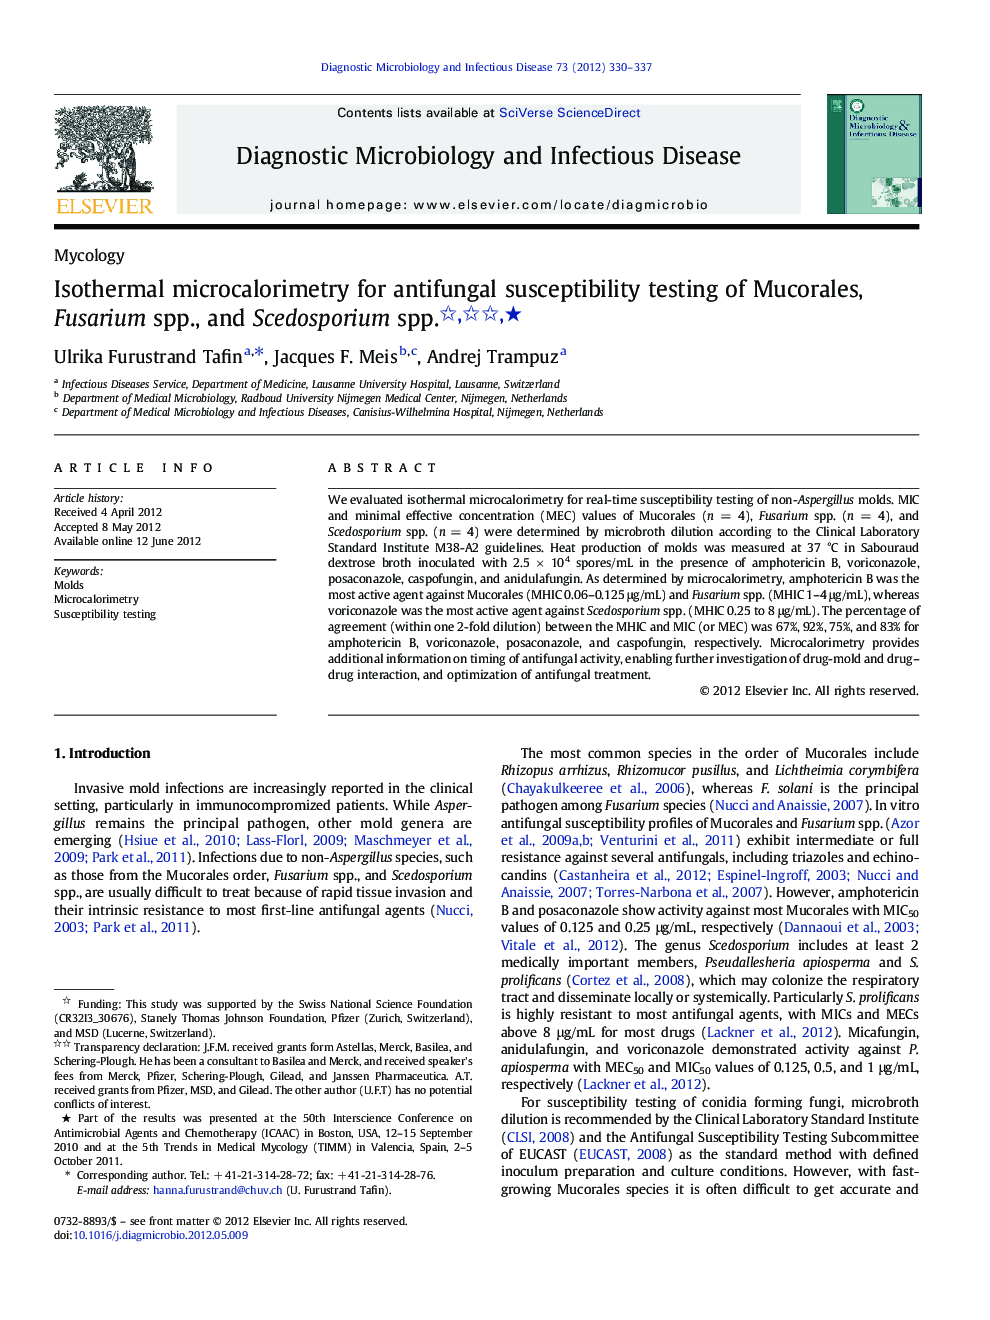 Isothermal microcalorimetry for antifungal susceptibility testing of Mucorales, Fusarium spp., and Scedosporium spp. ★